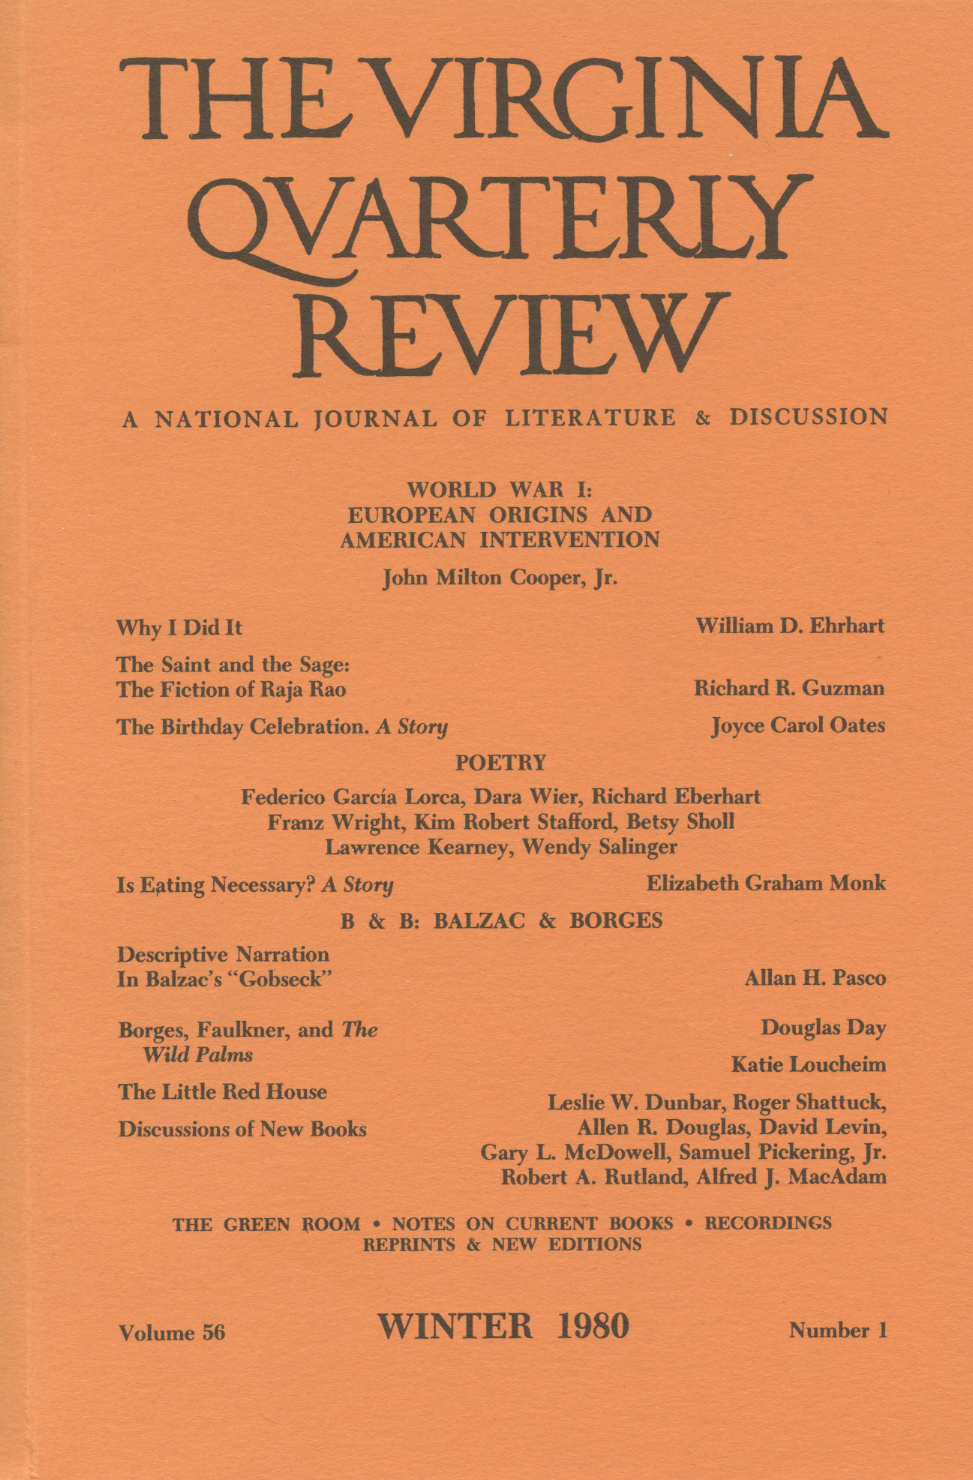 Virginia Quarterly Review, Winter 1980 cover